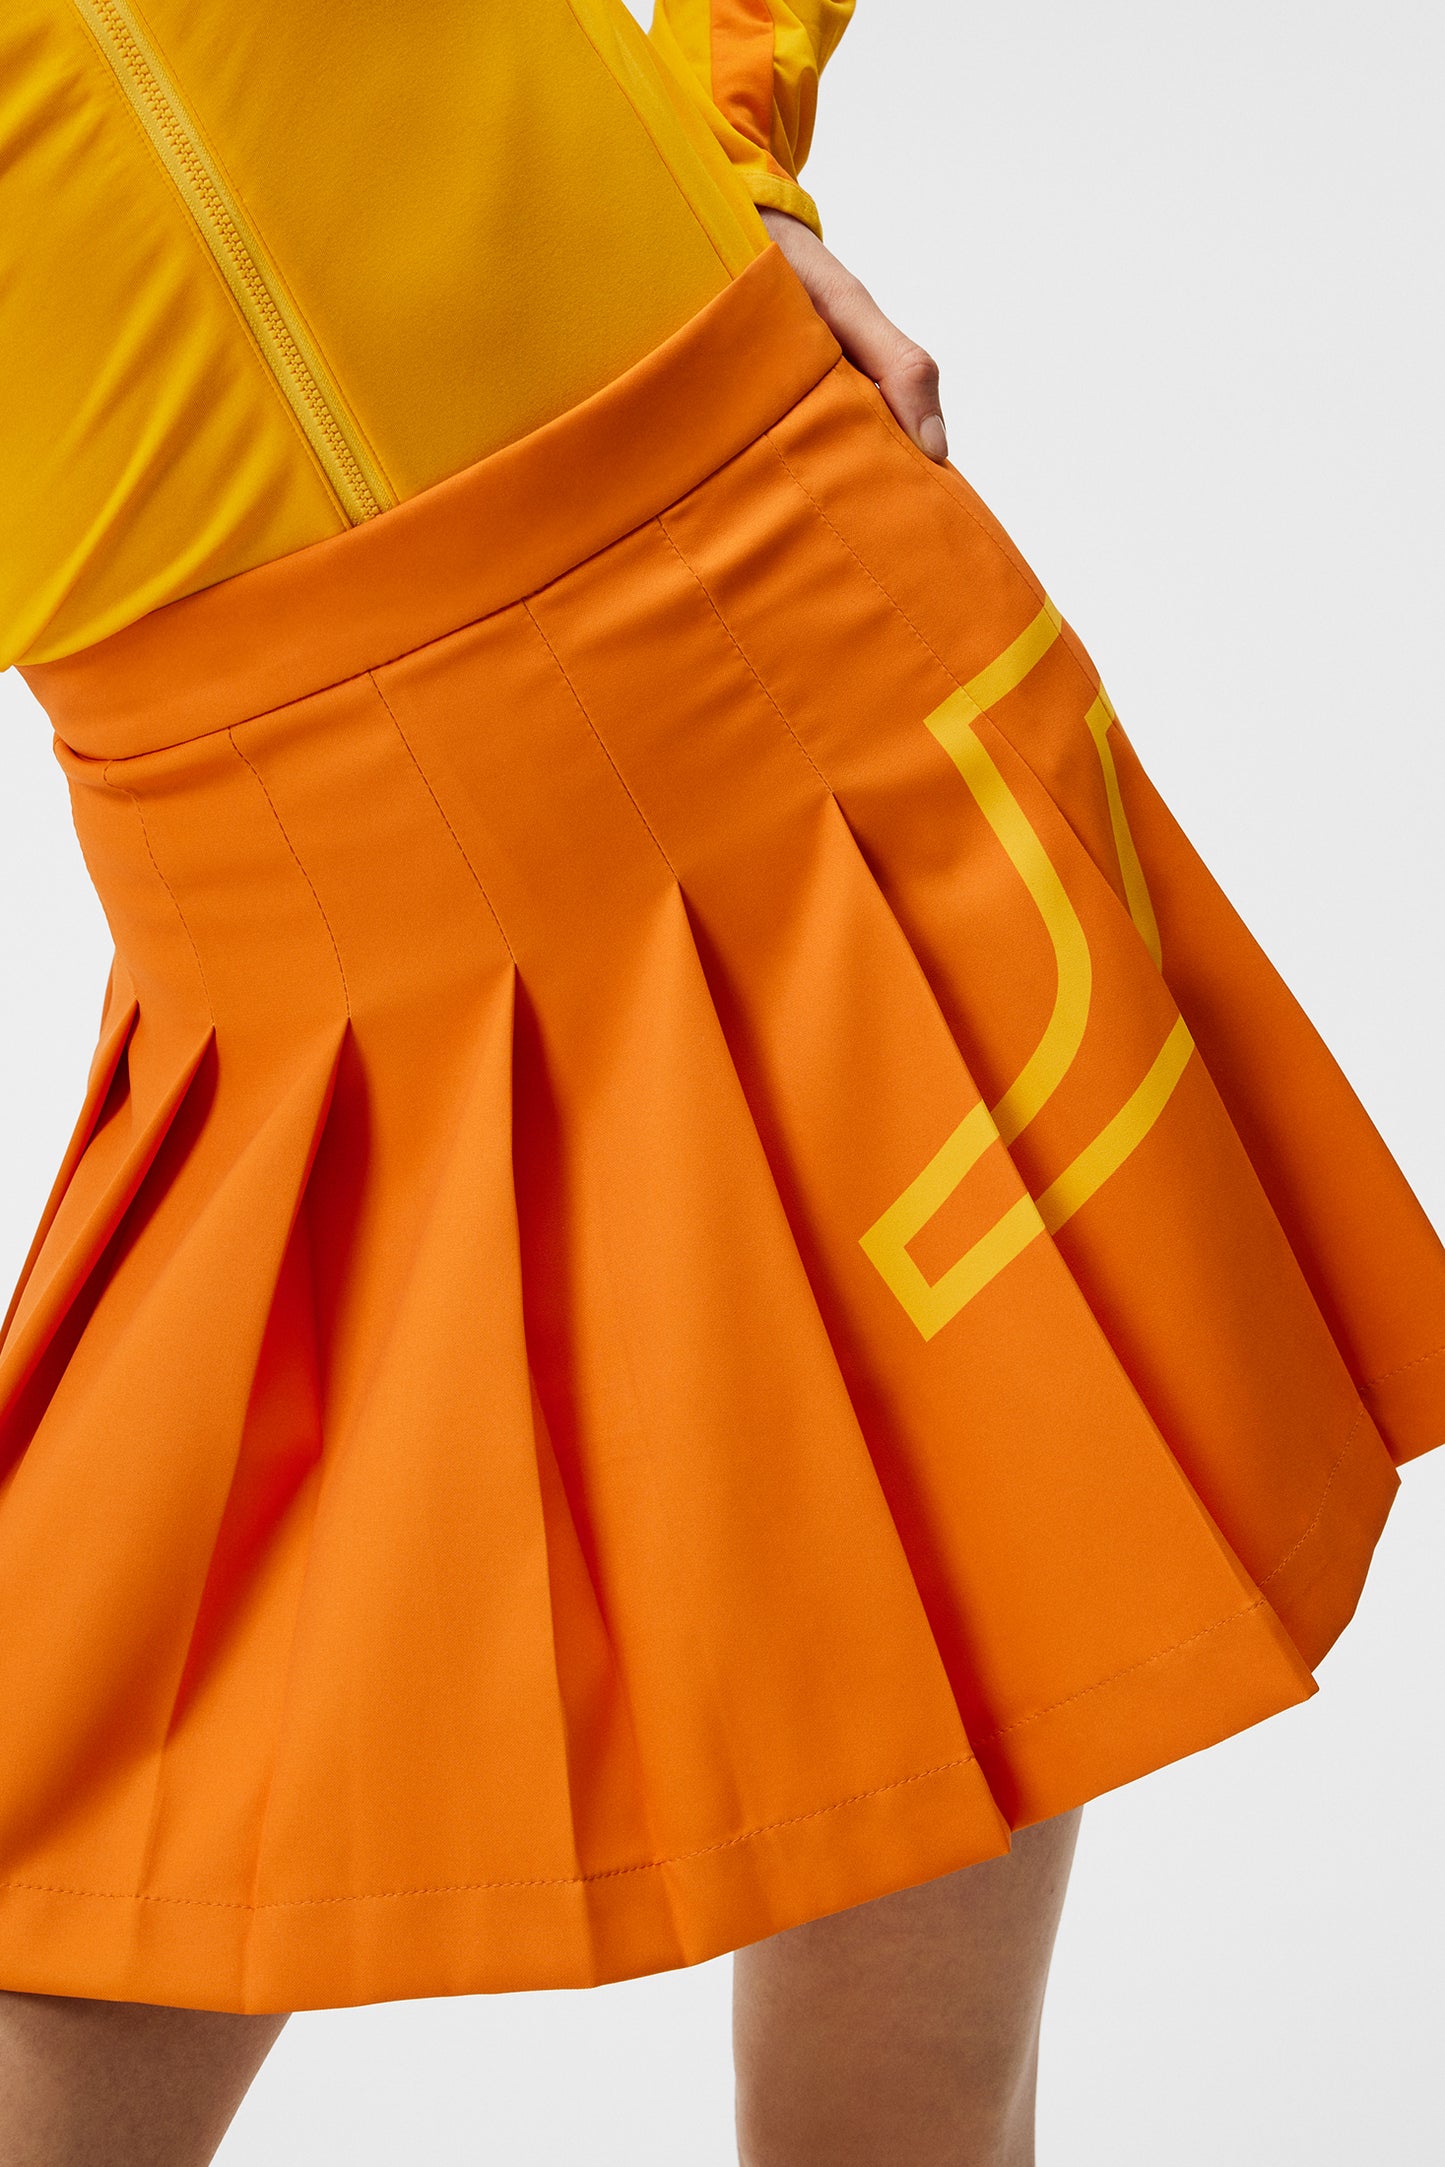 Naomi Skirt / Russet Orange